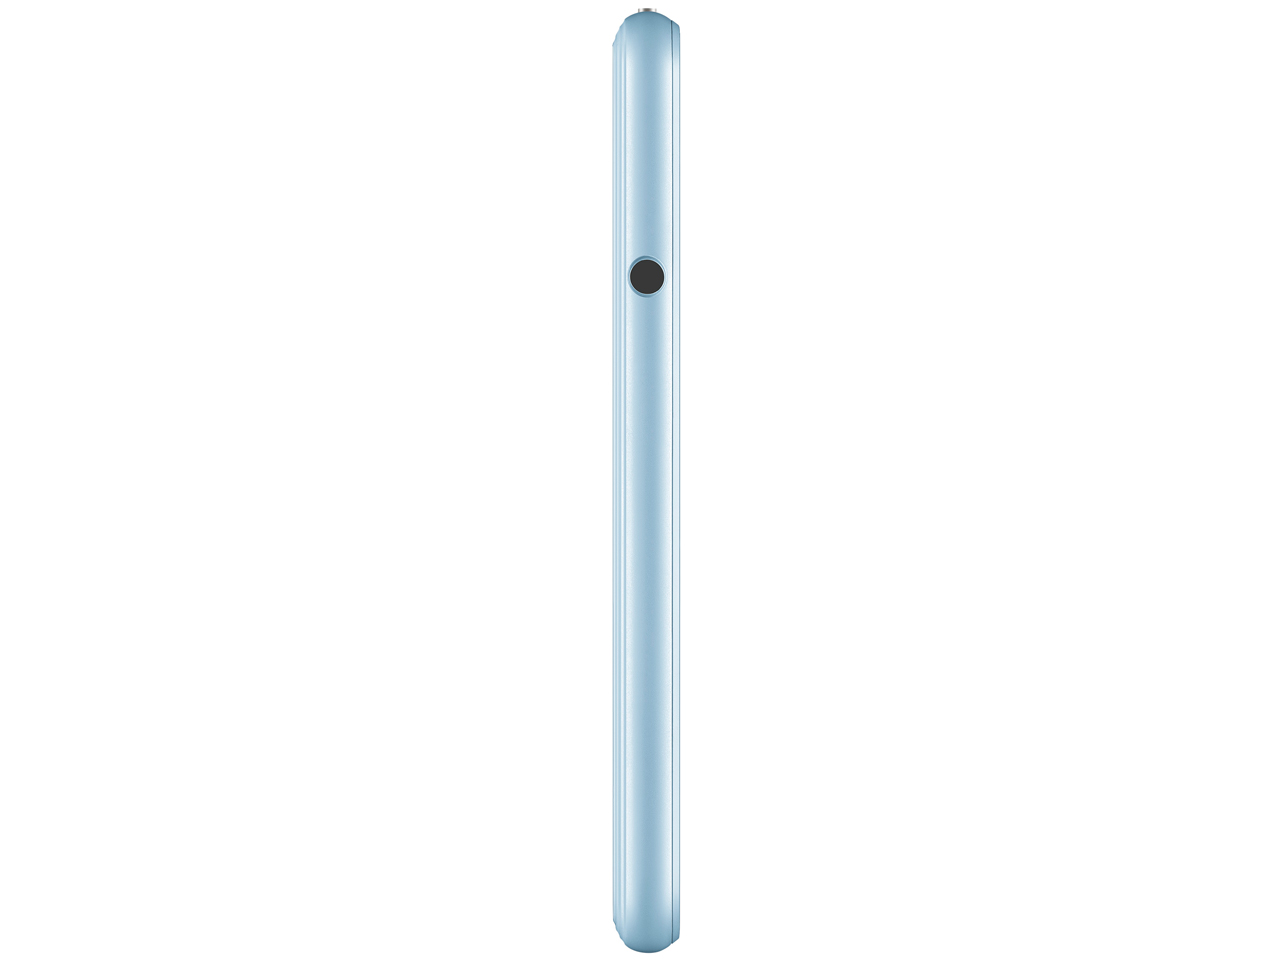 価格.com - 『本体 側面1』 MediaPad T2 7.0 Pro LTEモデル SIMフリー [ブルー] の製品画像